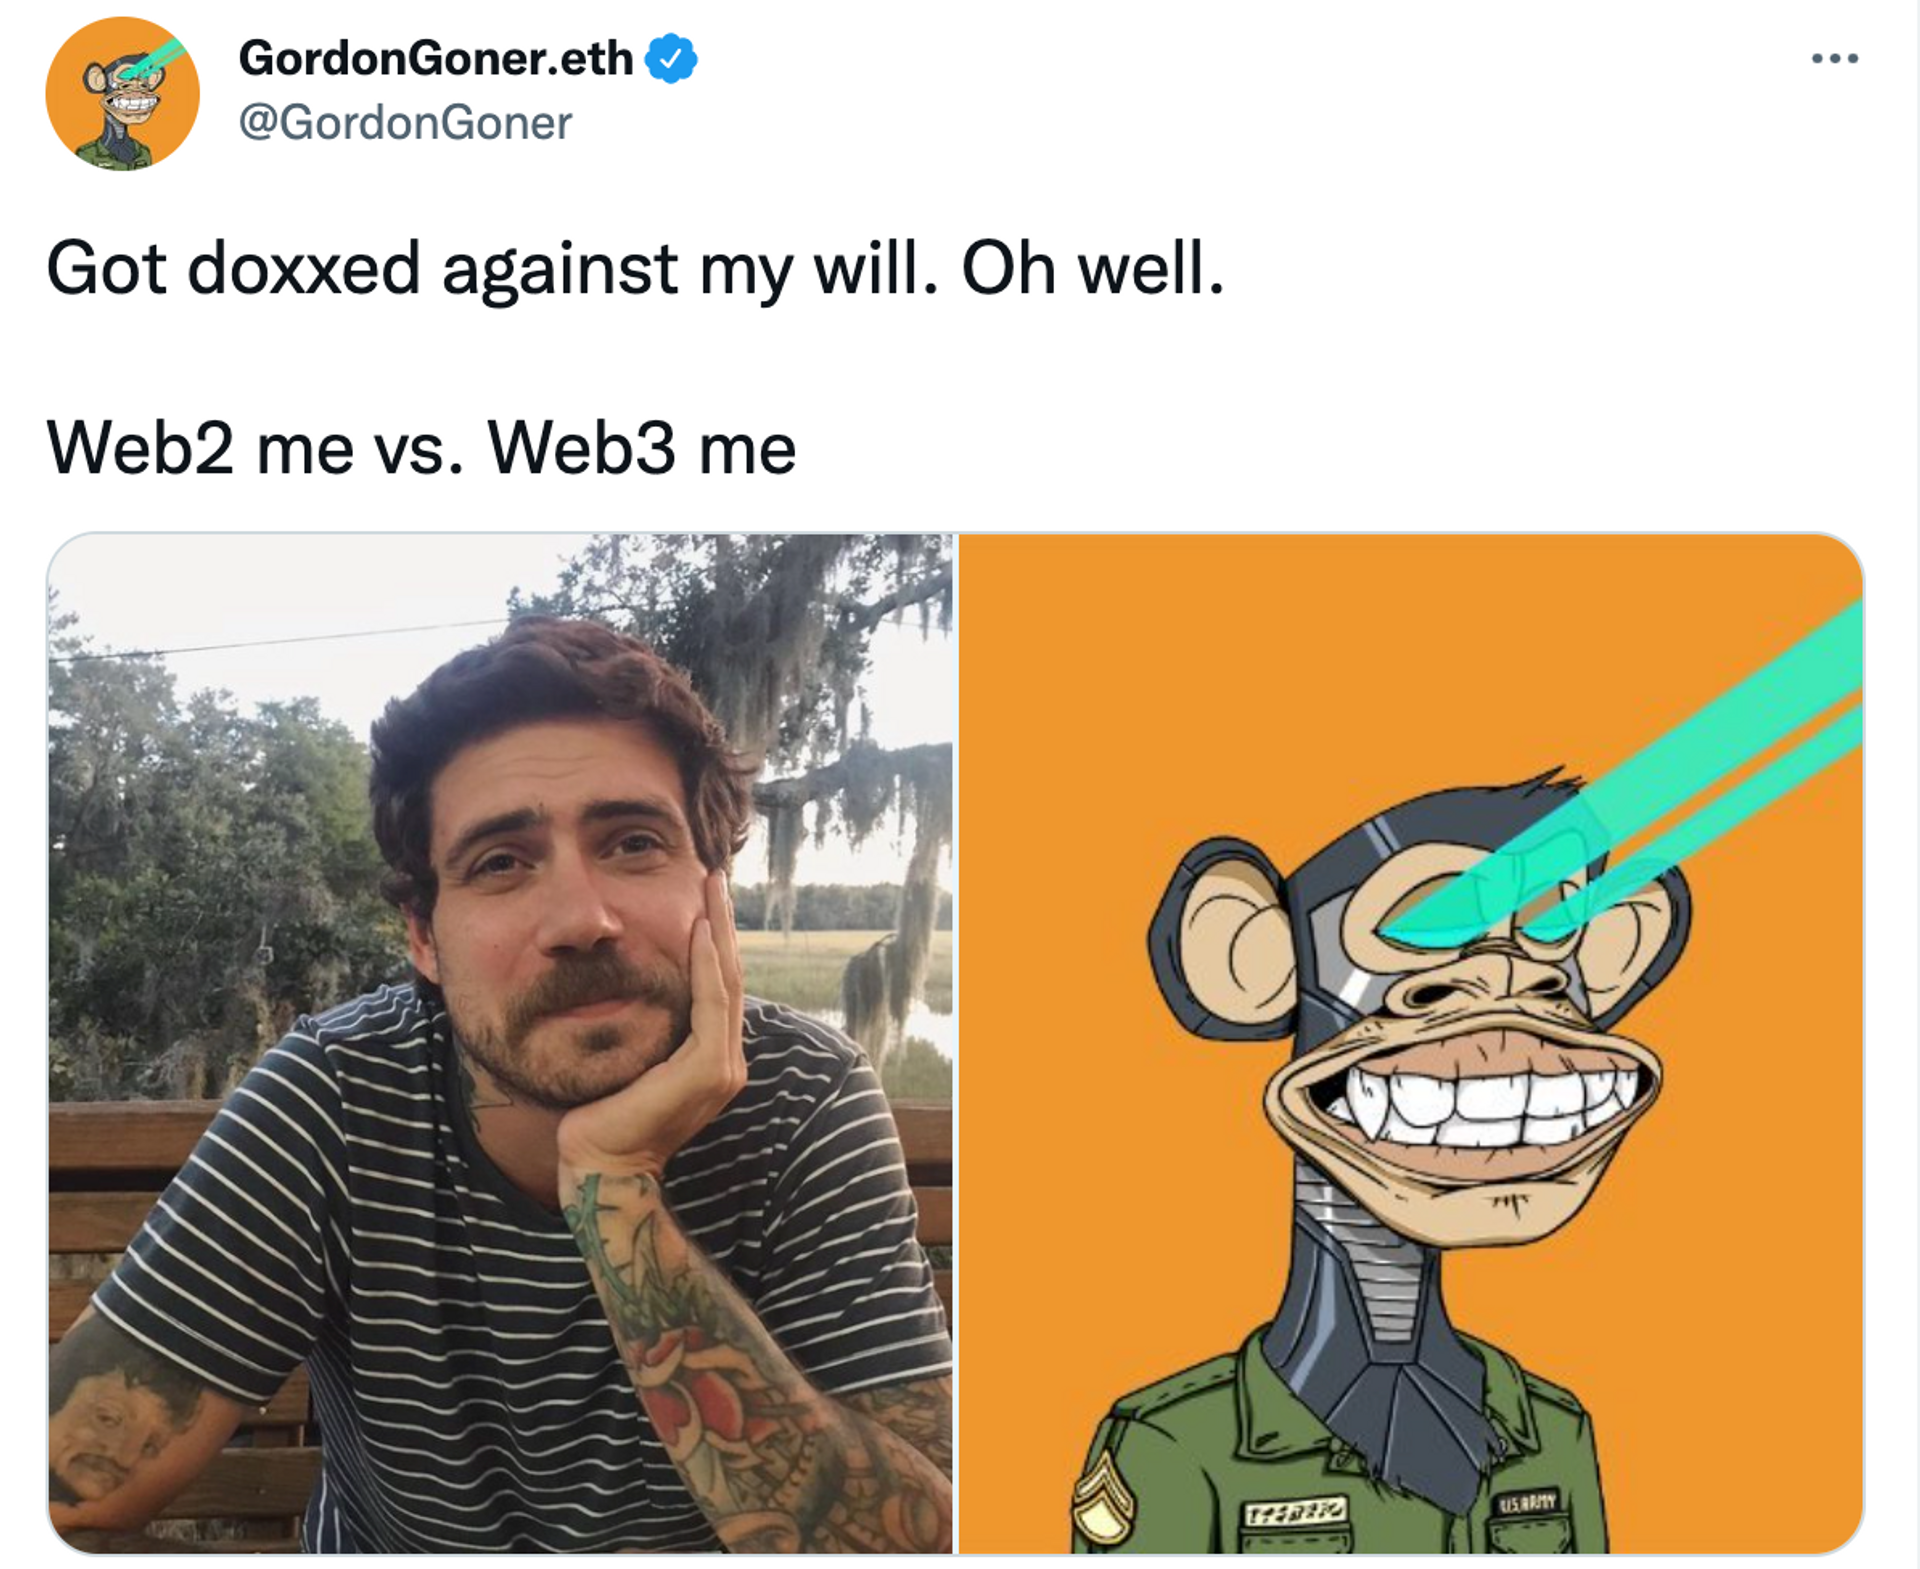 גרג סולאנו, הידוע באינטרנט תחת השם הבדוי גורדון גונר, טוען שהוא עבר דוקסינג על ידי Buzzfeed News לאחר שחשפו אותו כאחד ממייסדי Bored Ape Yacht Club.